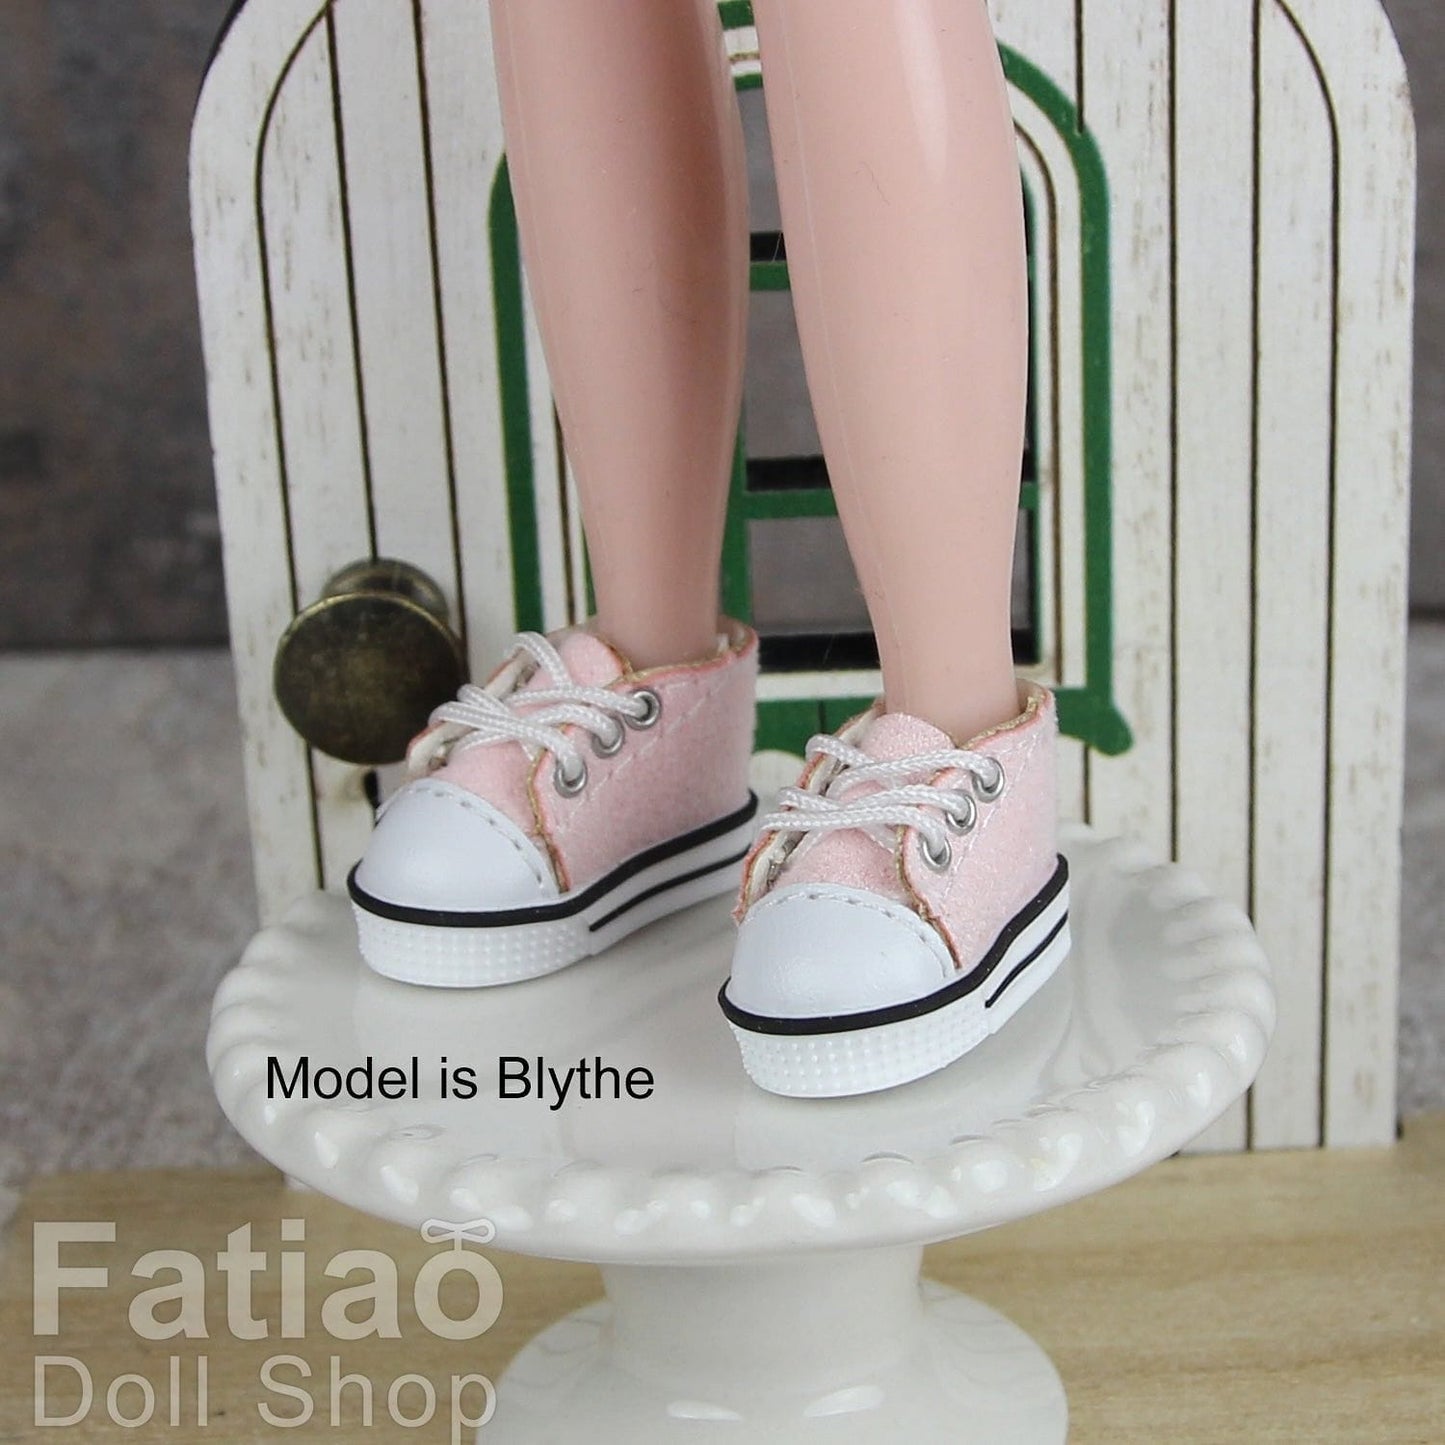 【Fatiao Doll Shop】休閒帆布鞋 OB NeoBlythe 中布 花池 momo